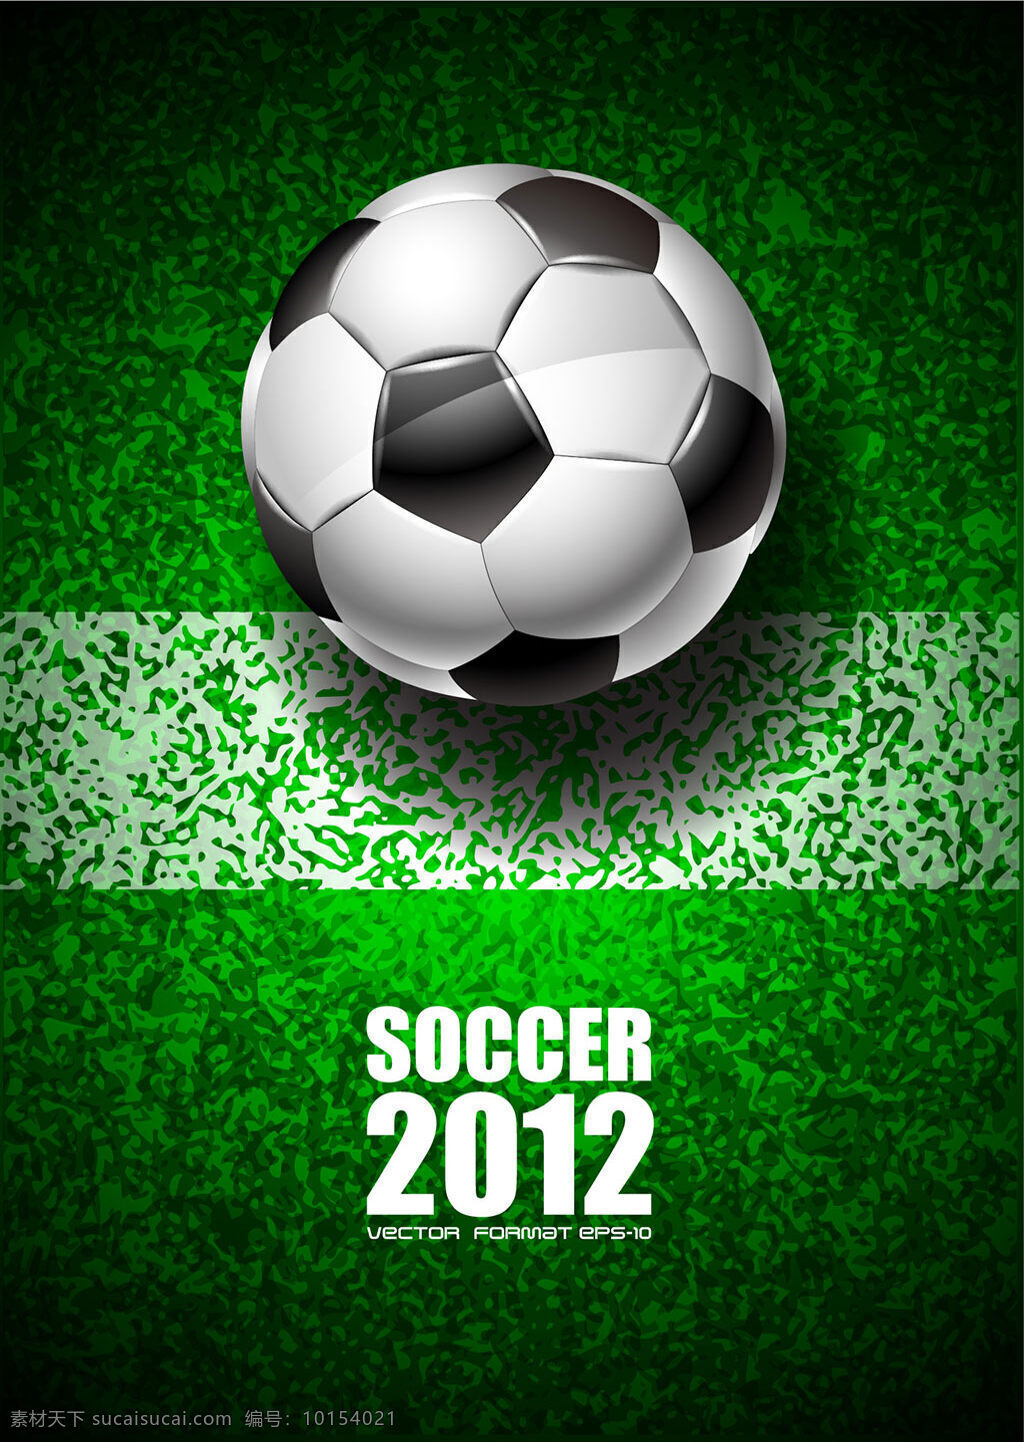 足球 海报 矢量 绿色草地 欧洲杯 欧洲杯海报 世界杯 体育赛事 绿色